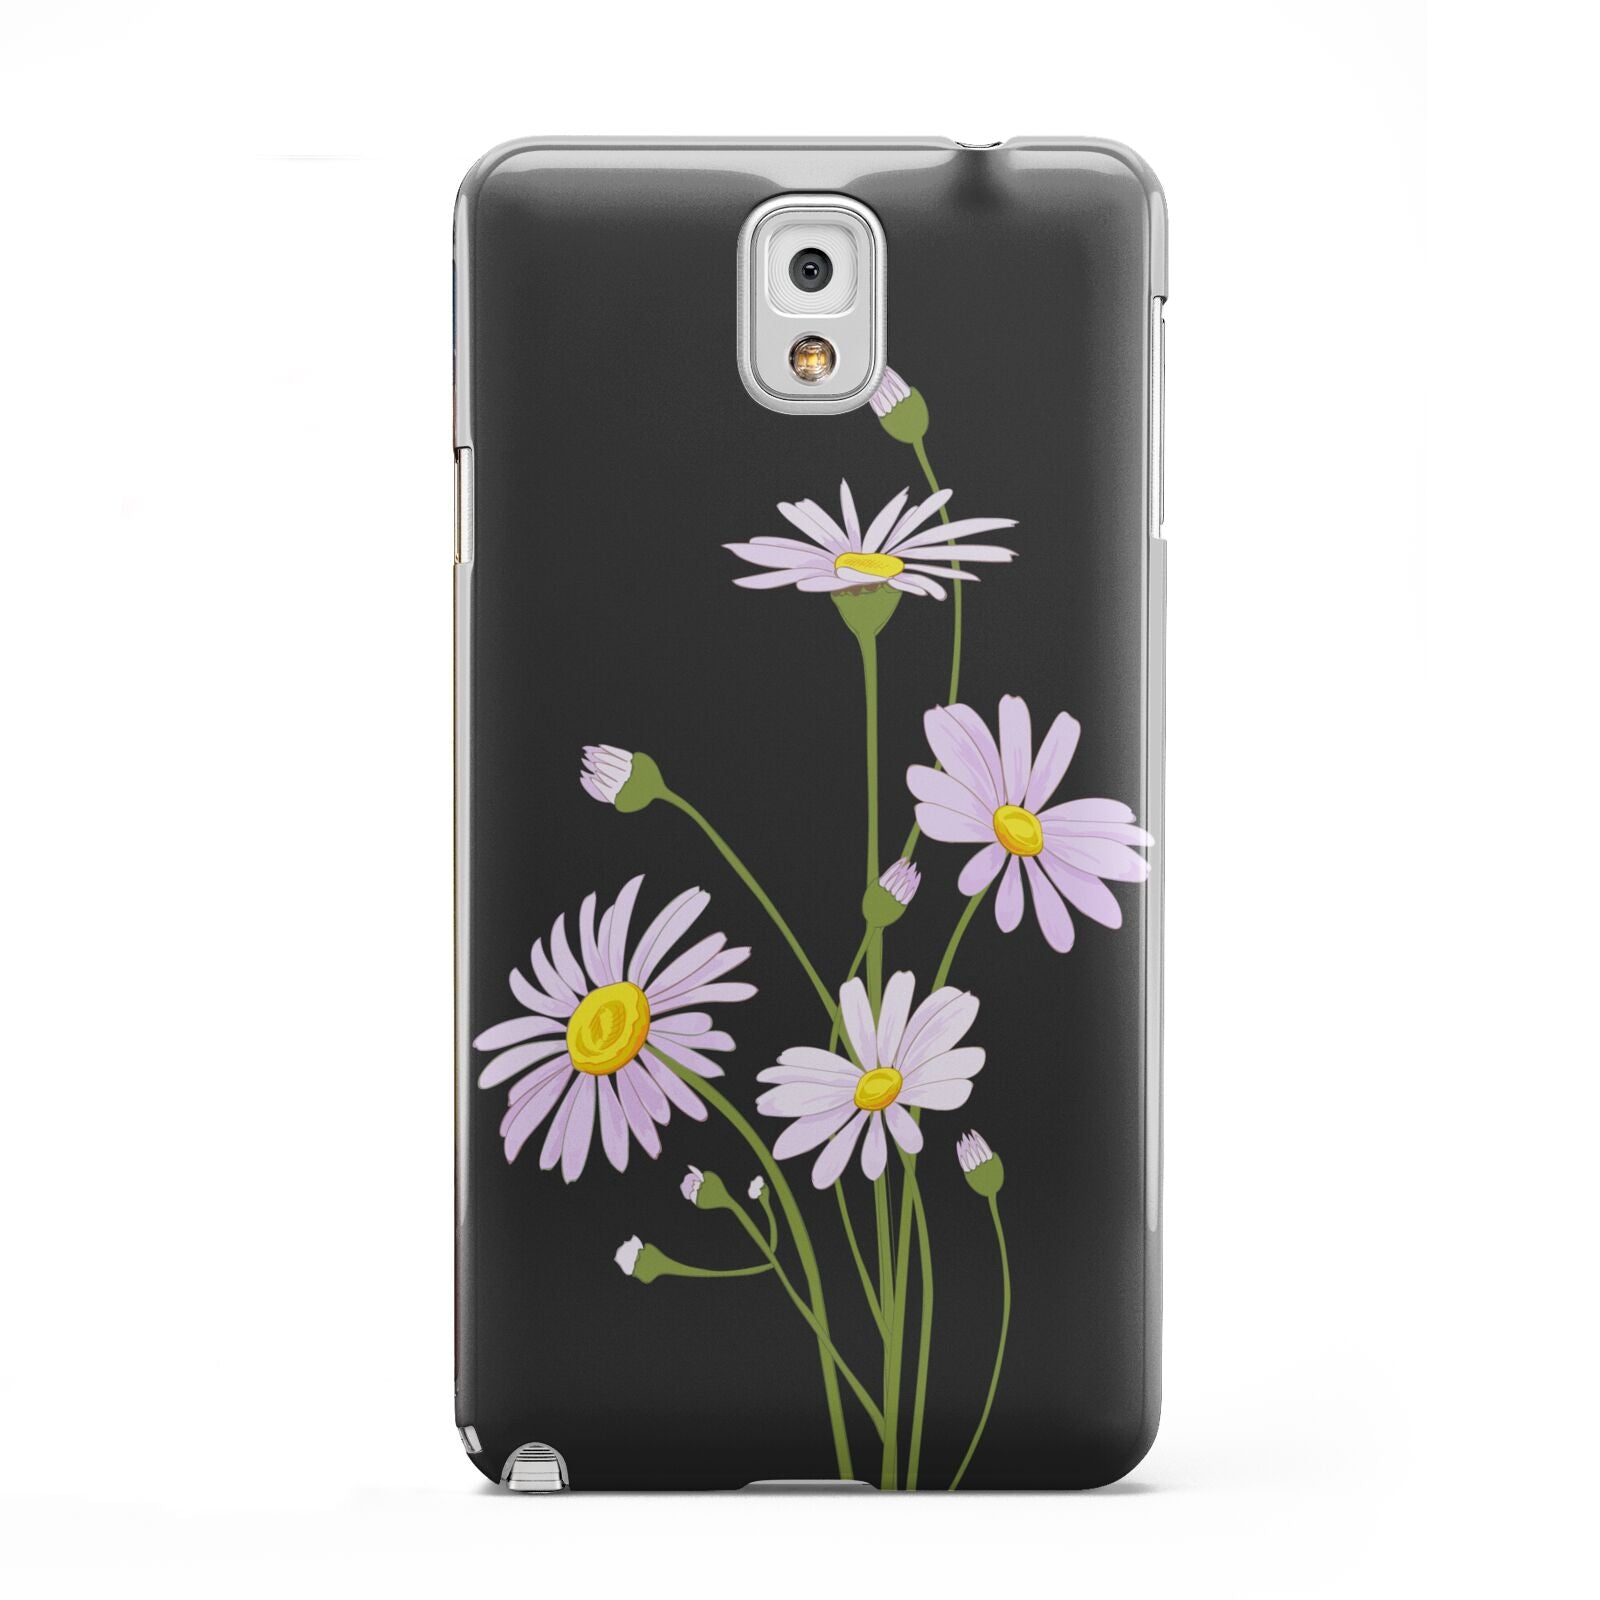 Wild Daisies Samsung Galaxy Note 3 Case